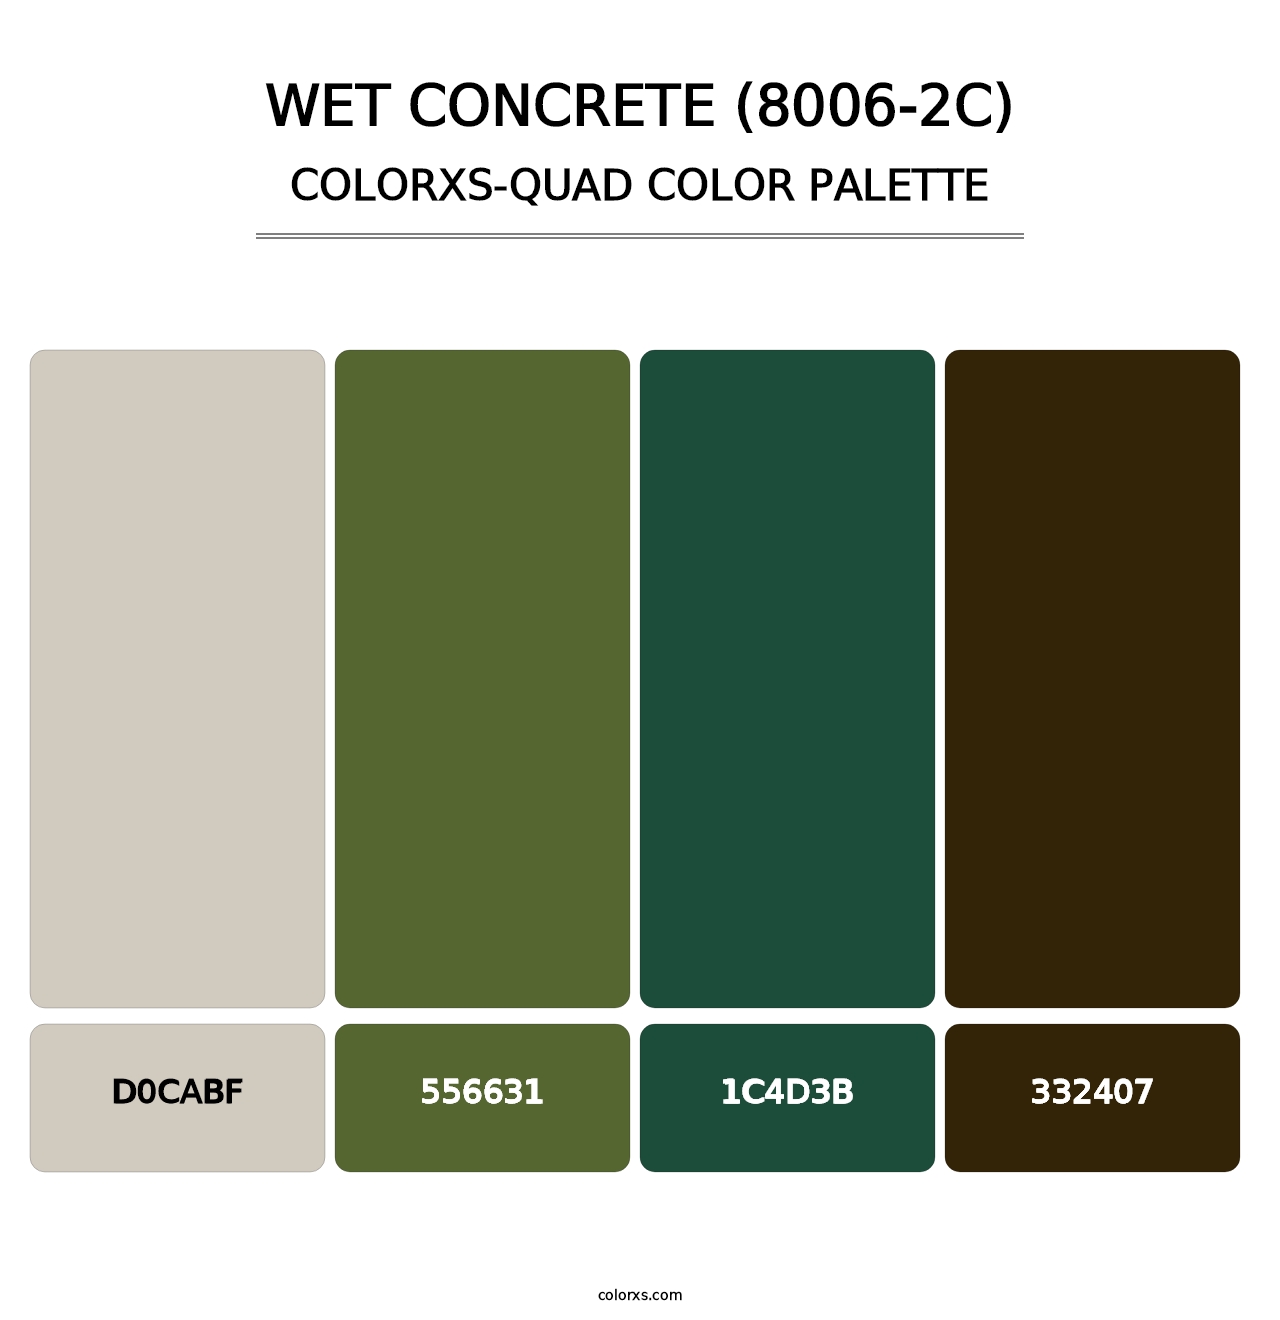 Wet Concrete (8006-2C) - Colorxs Quad Palette